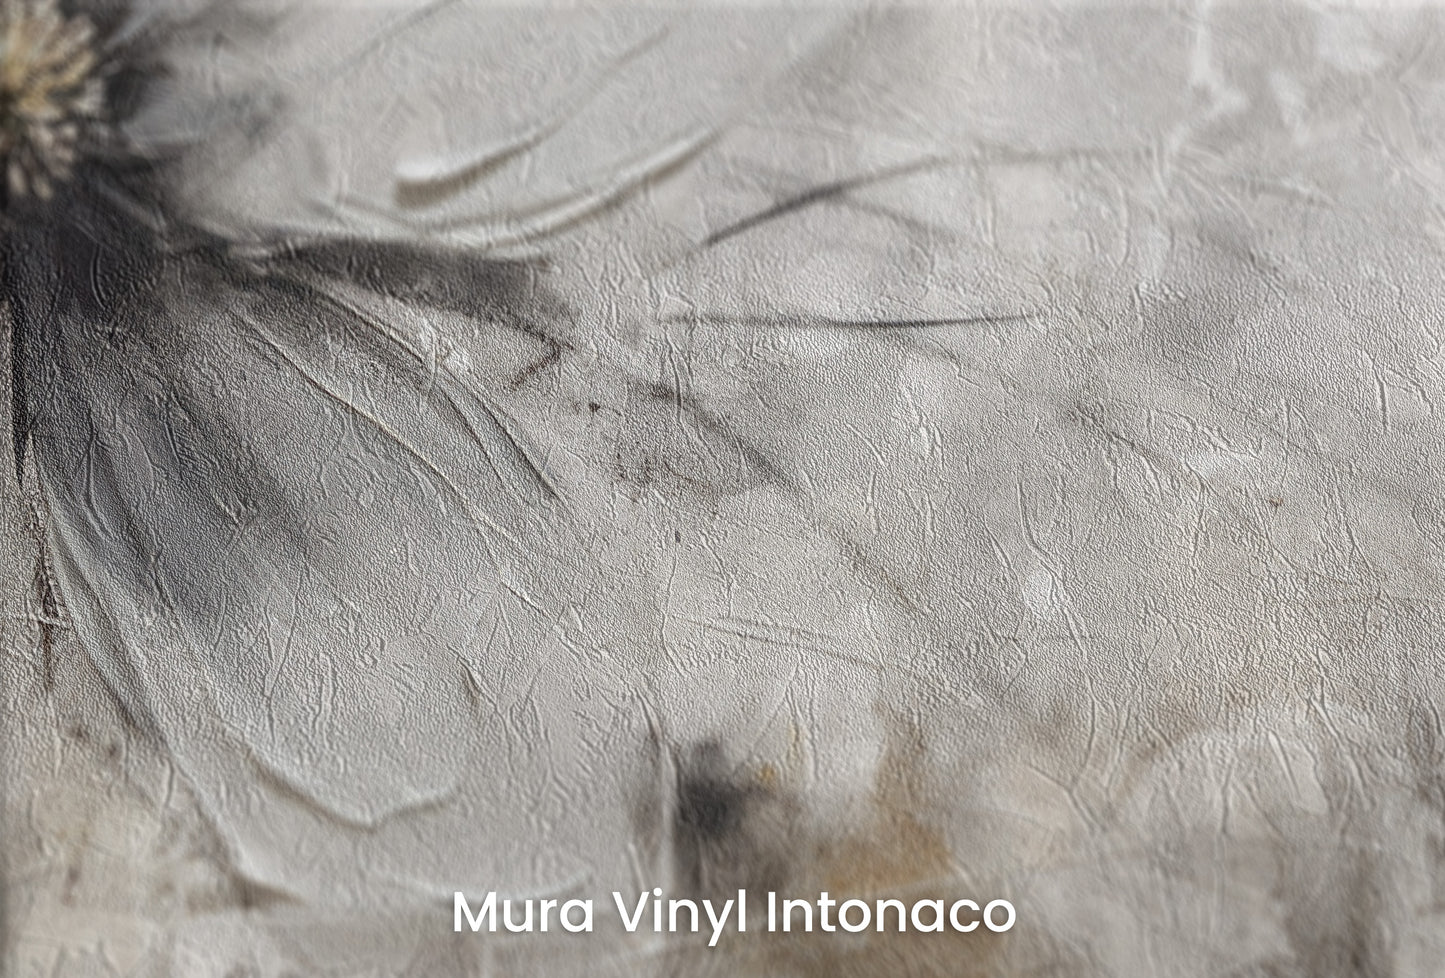 Zbliżenie na artystyczną fototapetę o nazwie MONOCHROME FLORAL ELEGANCE na podłożu Mura Vinyl Intonaco - struktura tartego tynku.